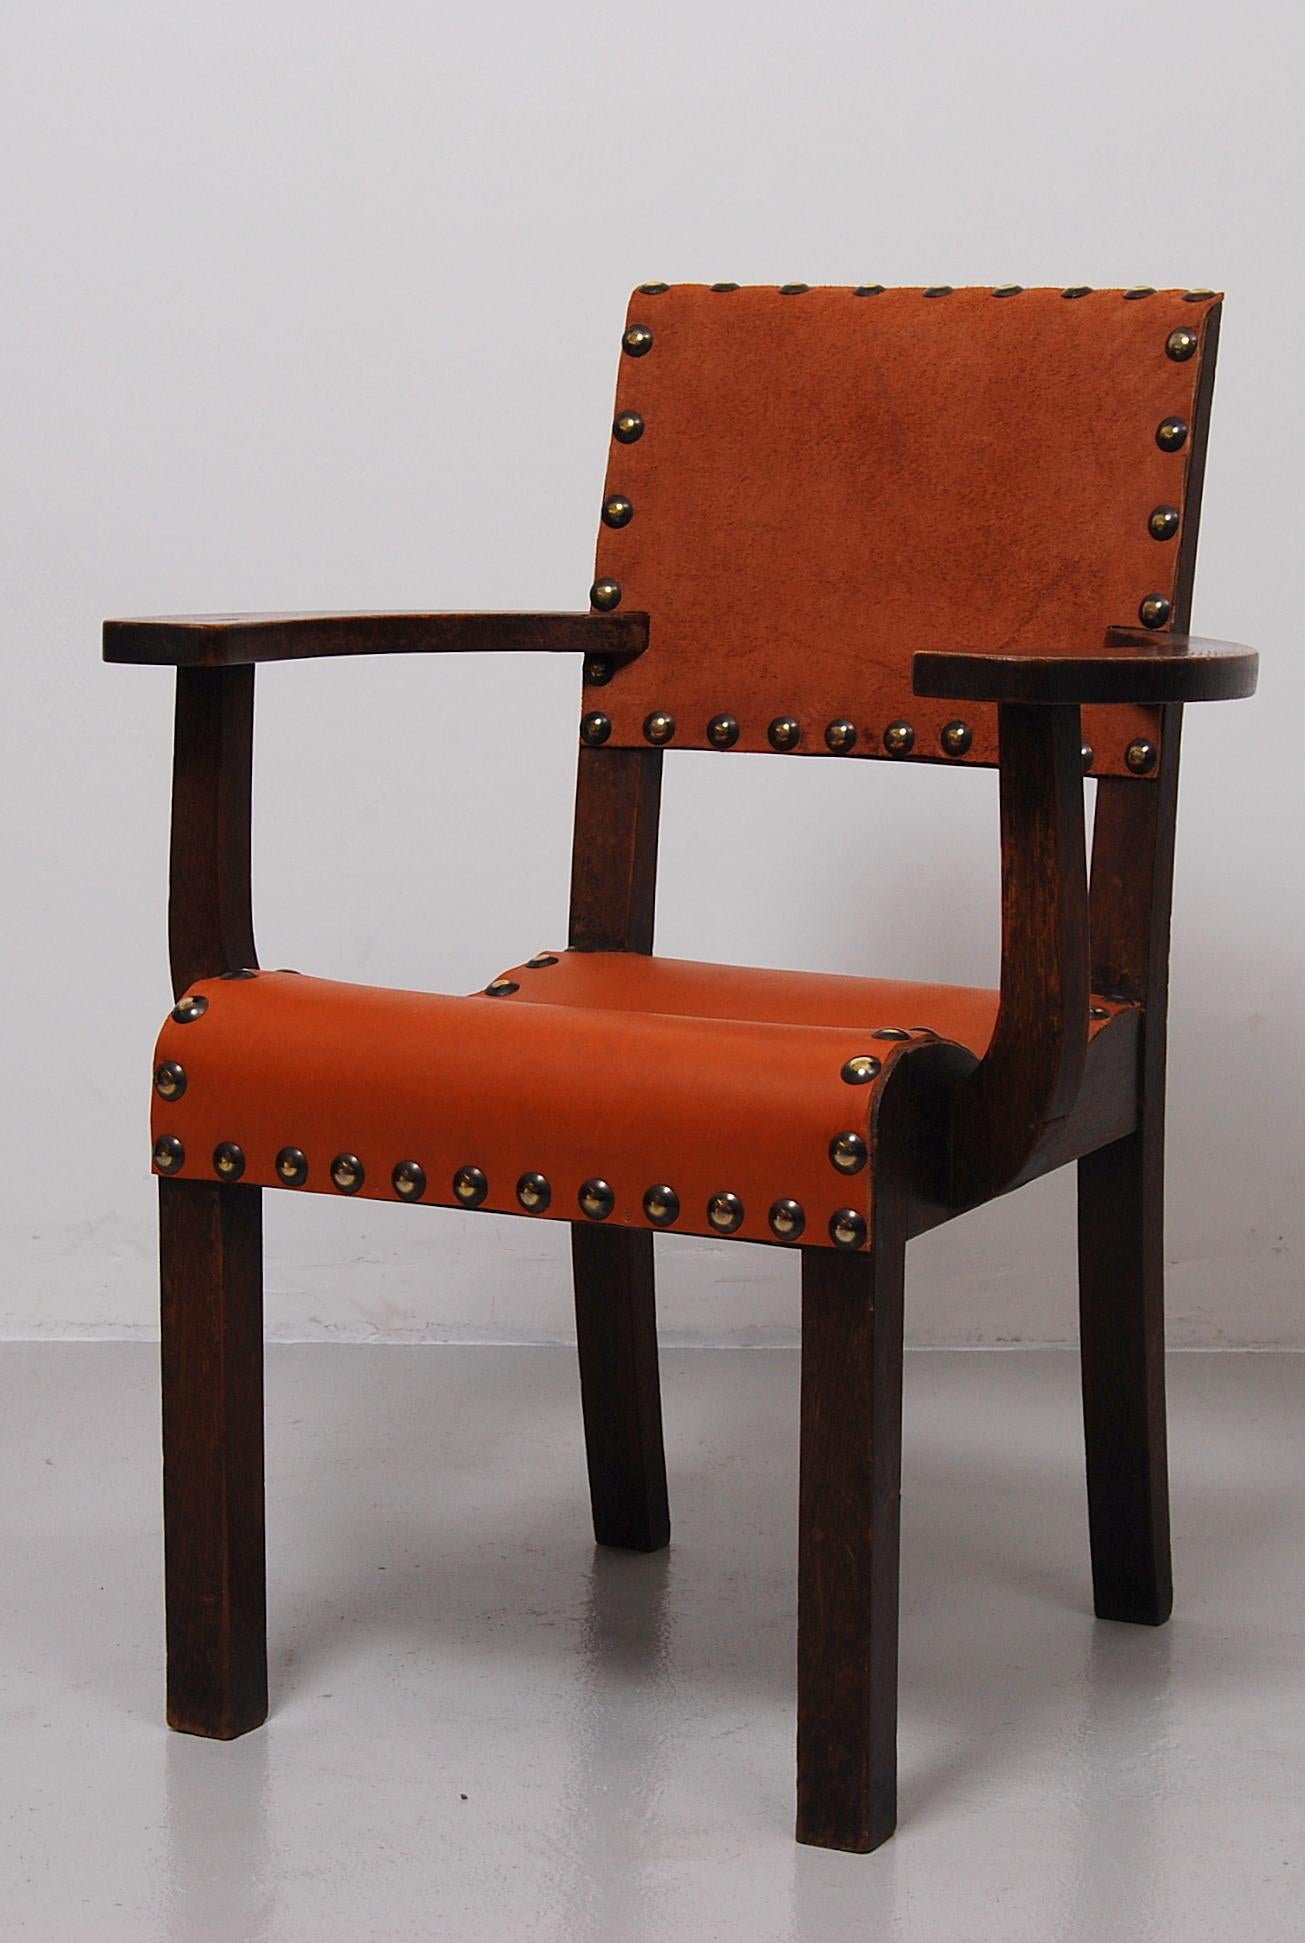 Ein spanischer Kolonialstuhl aus massivem Holz mit breiten, geschwungenen Armlehnen und mit neuem, dickem Ledersitz und -rücken. Guter Zustand.
 